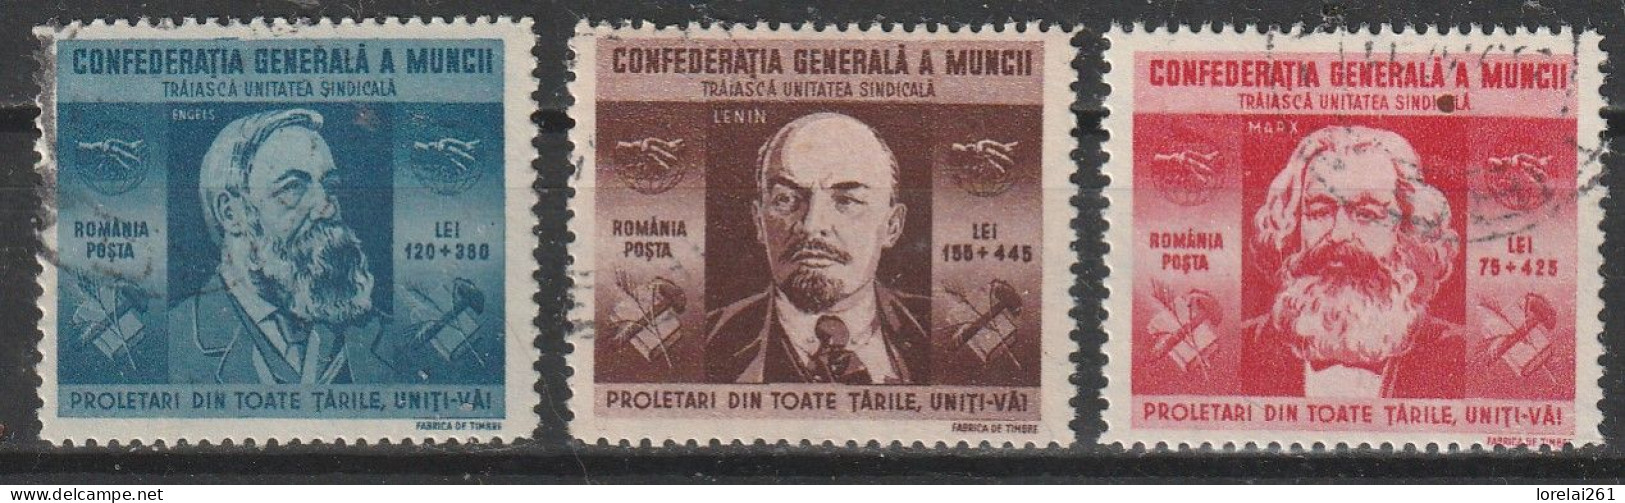 1945 - Confédération Générale Du Travail Mi No 861/863 - Oblitérés